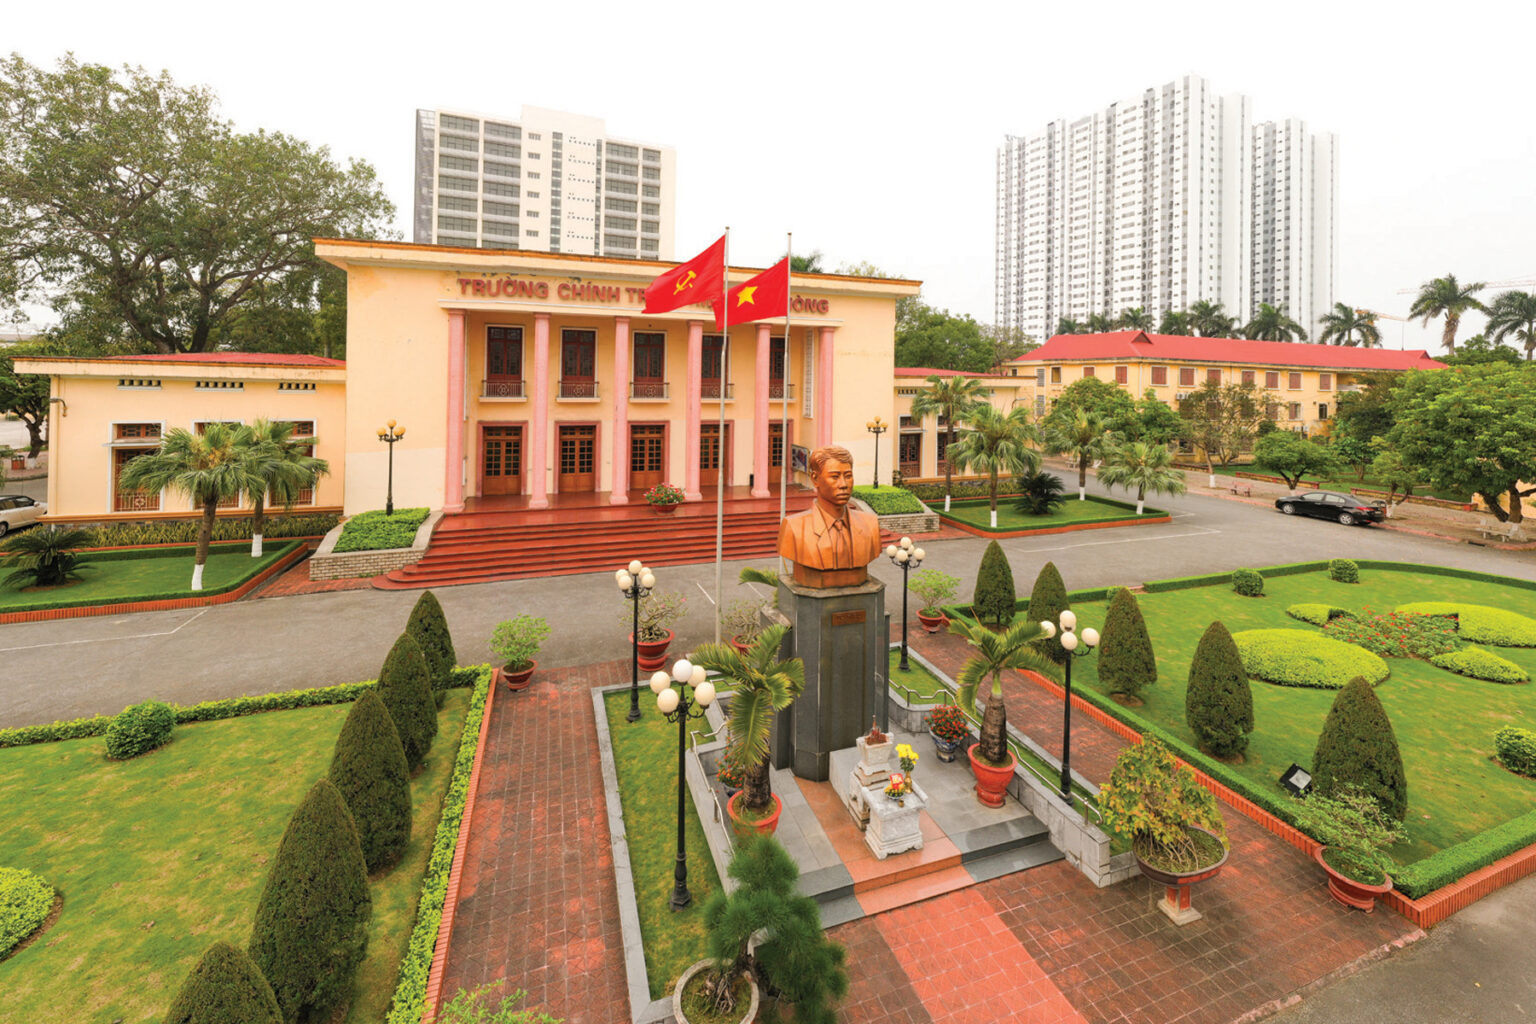 Trường Chính trị Tô Hiệu ở thành phố Hải Phòng.